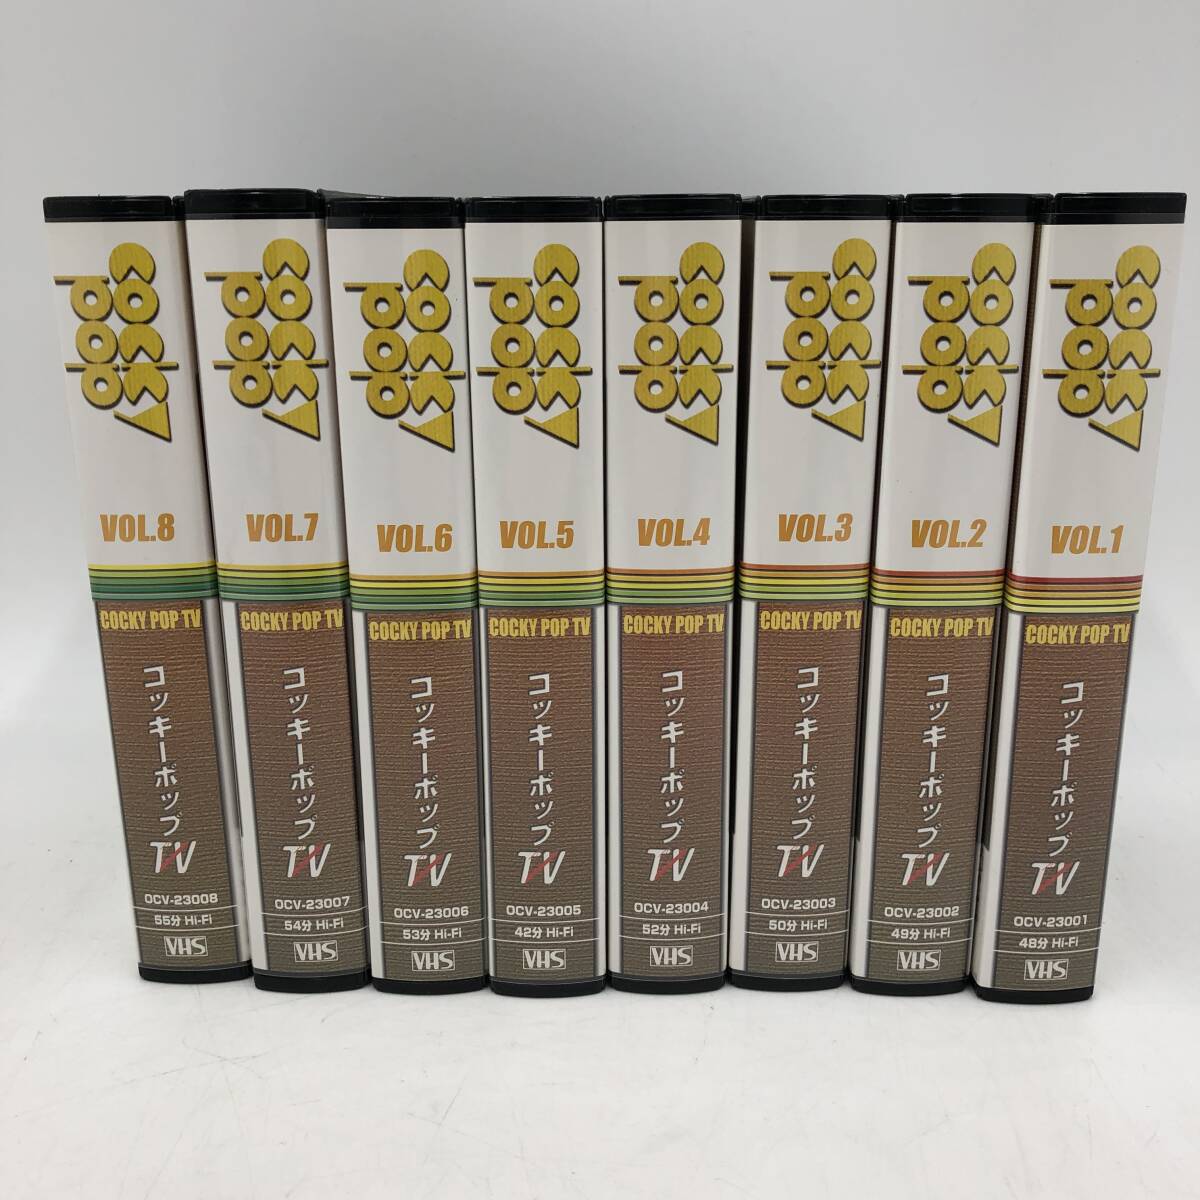 YAMAHA/ヤマハ COCKY POP TV (コッキーポップ TV) 全8巻 VHS 【視聴未確認】の画像2